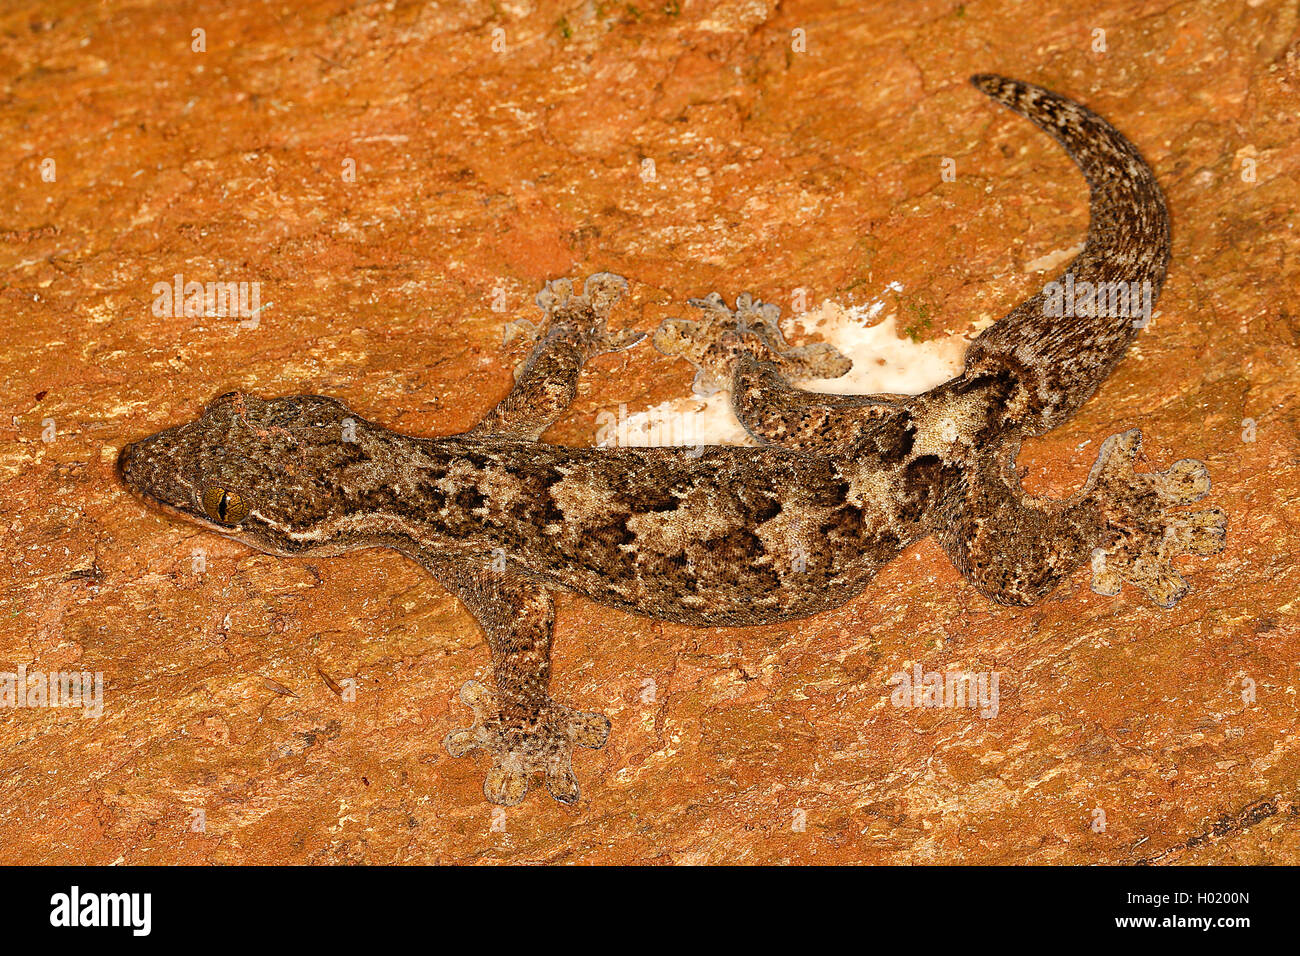 Bois esclave, Turniptail Turnip-Tail gecko, Gecko (Thecadactylus rapicauda), sur une pierre, le Costa Rica Banque D'Images